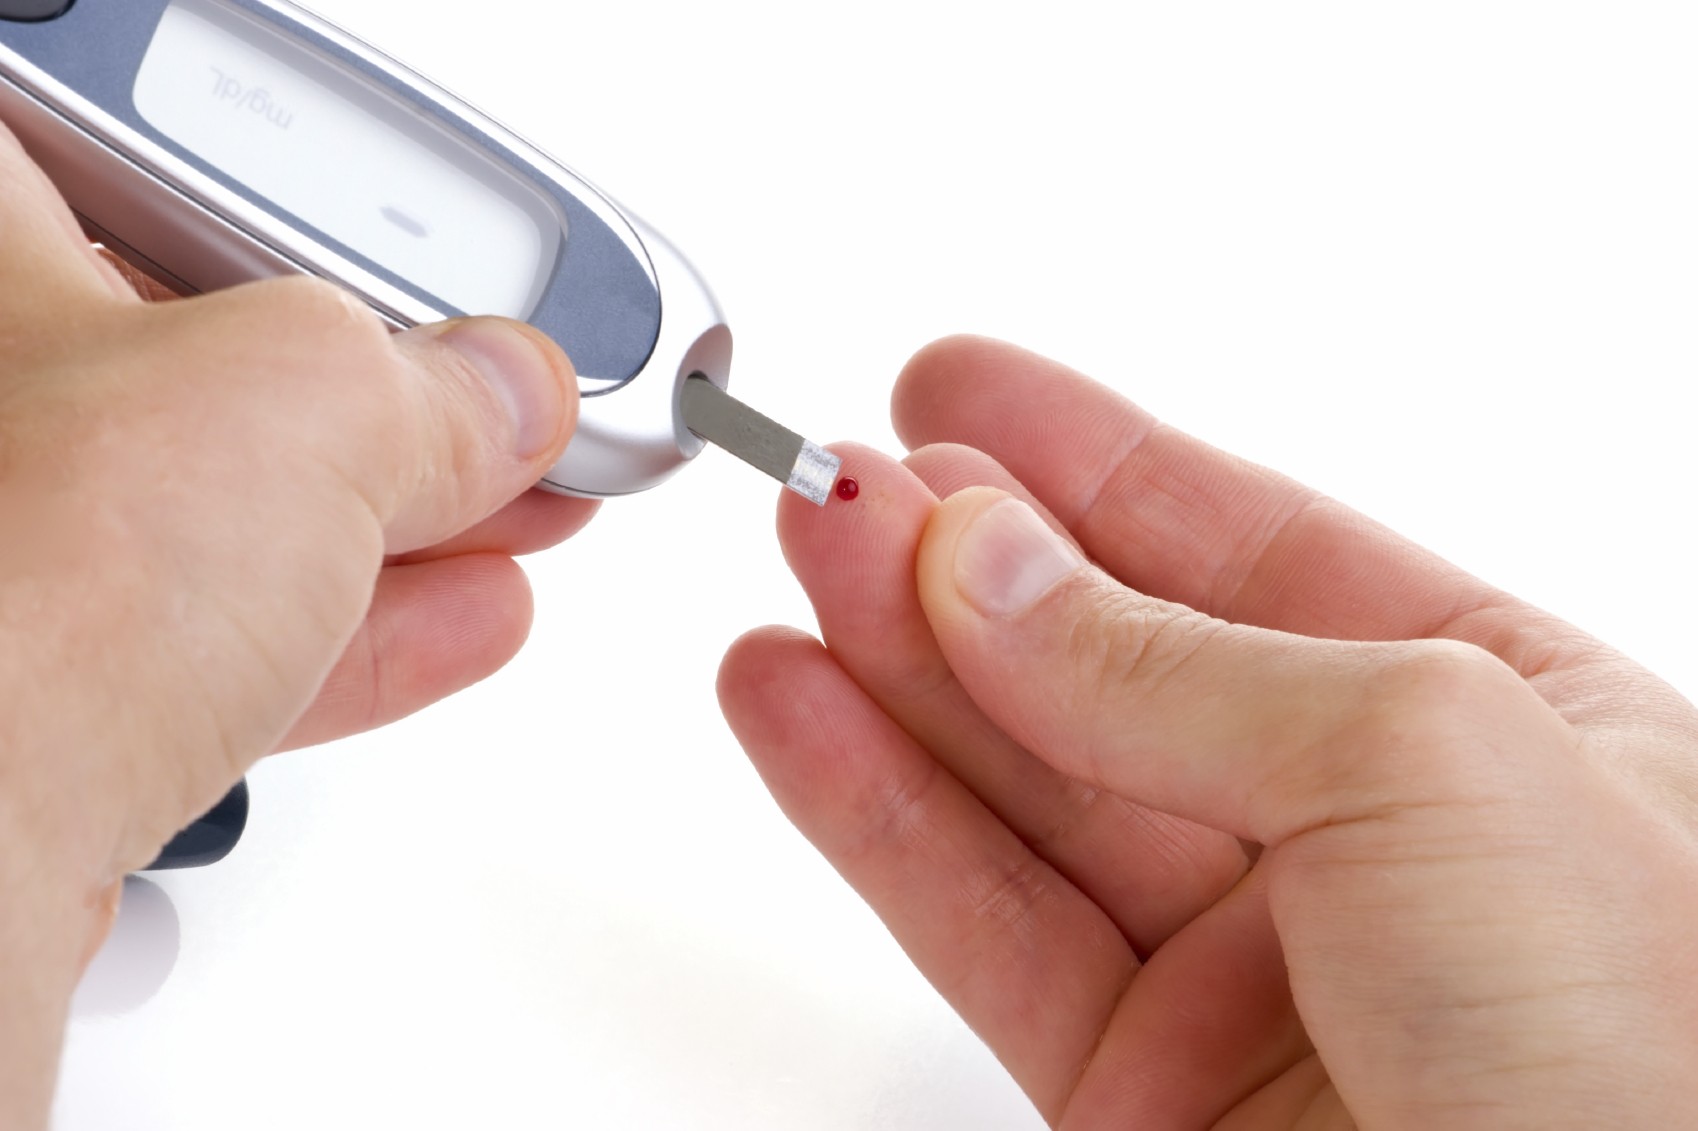 Em 2013 surgiram 160 novos casos de diabetes por dia